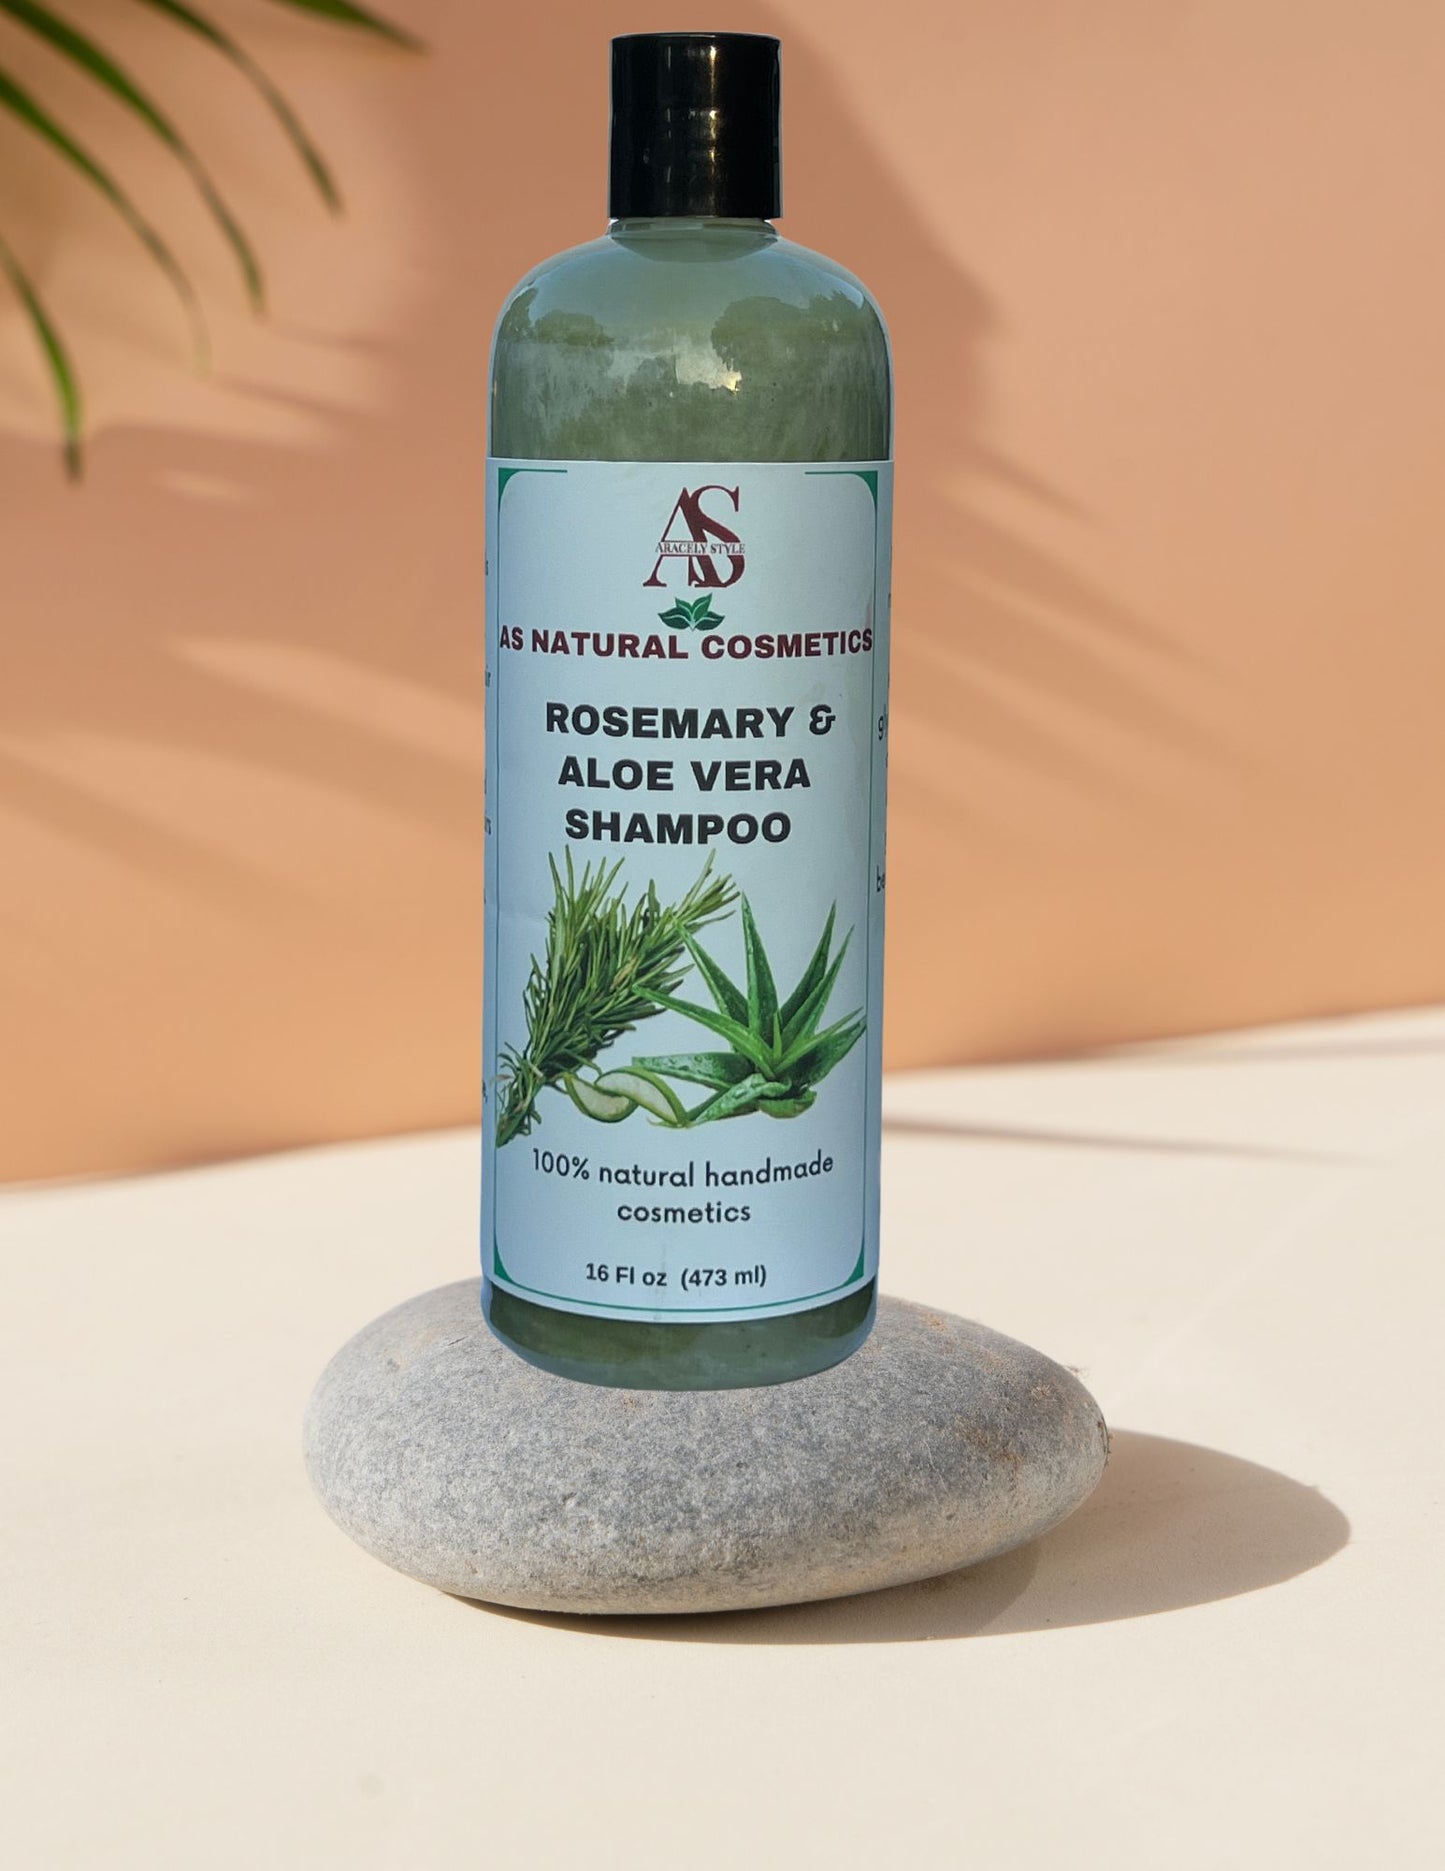 Rosemary & Aloe vera shampoo